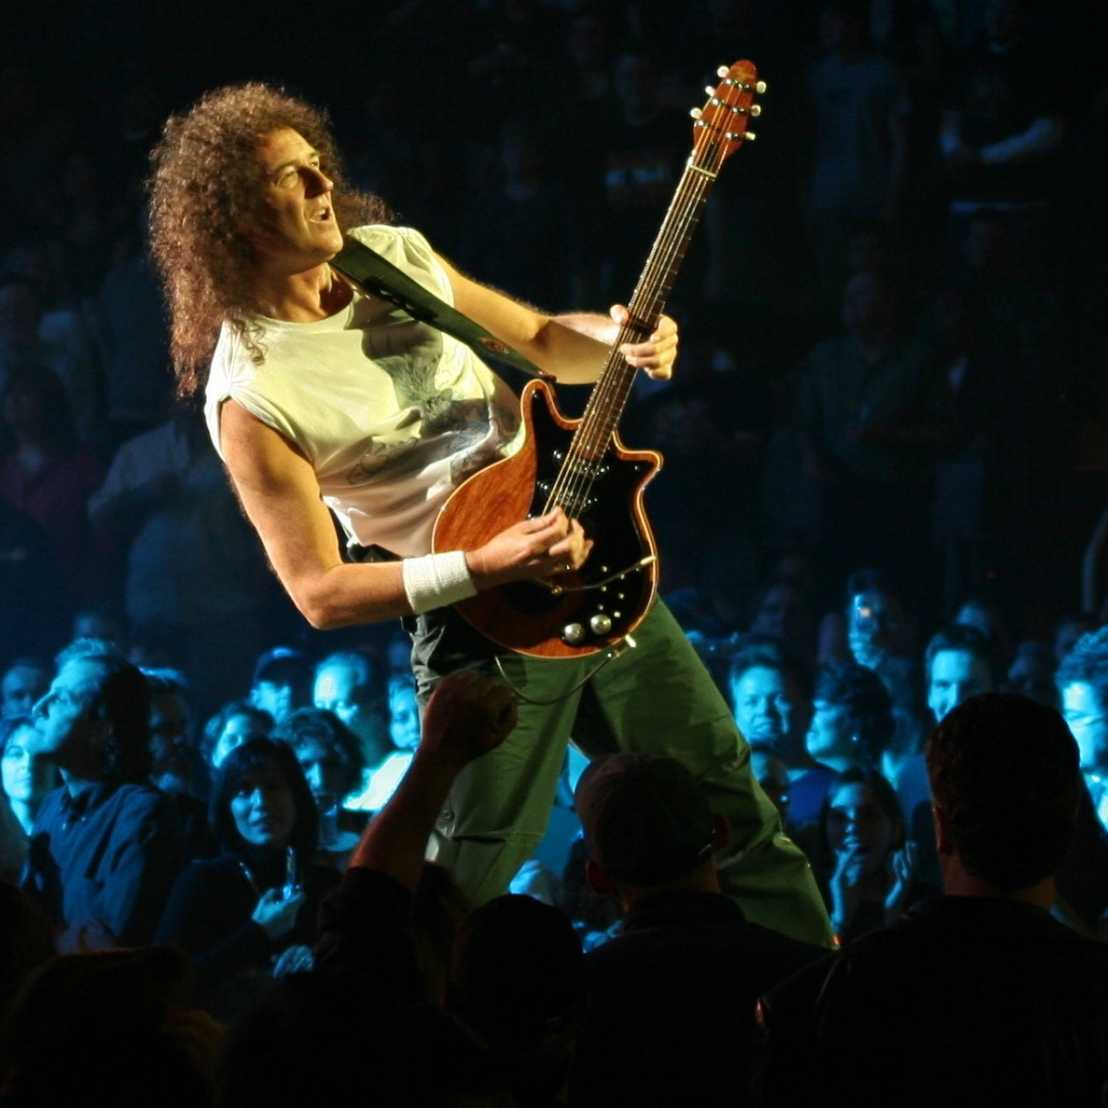 Queen guitarist, Brian May